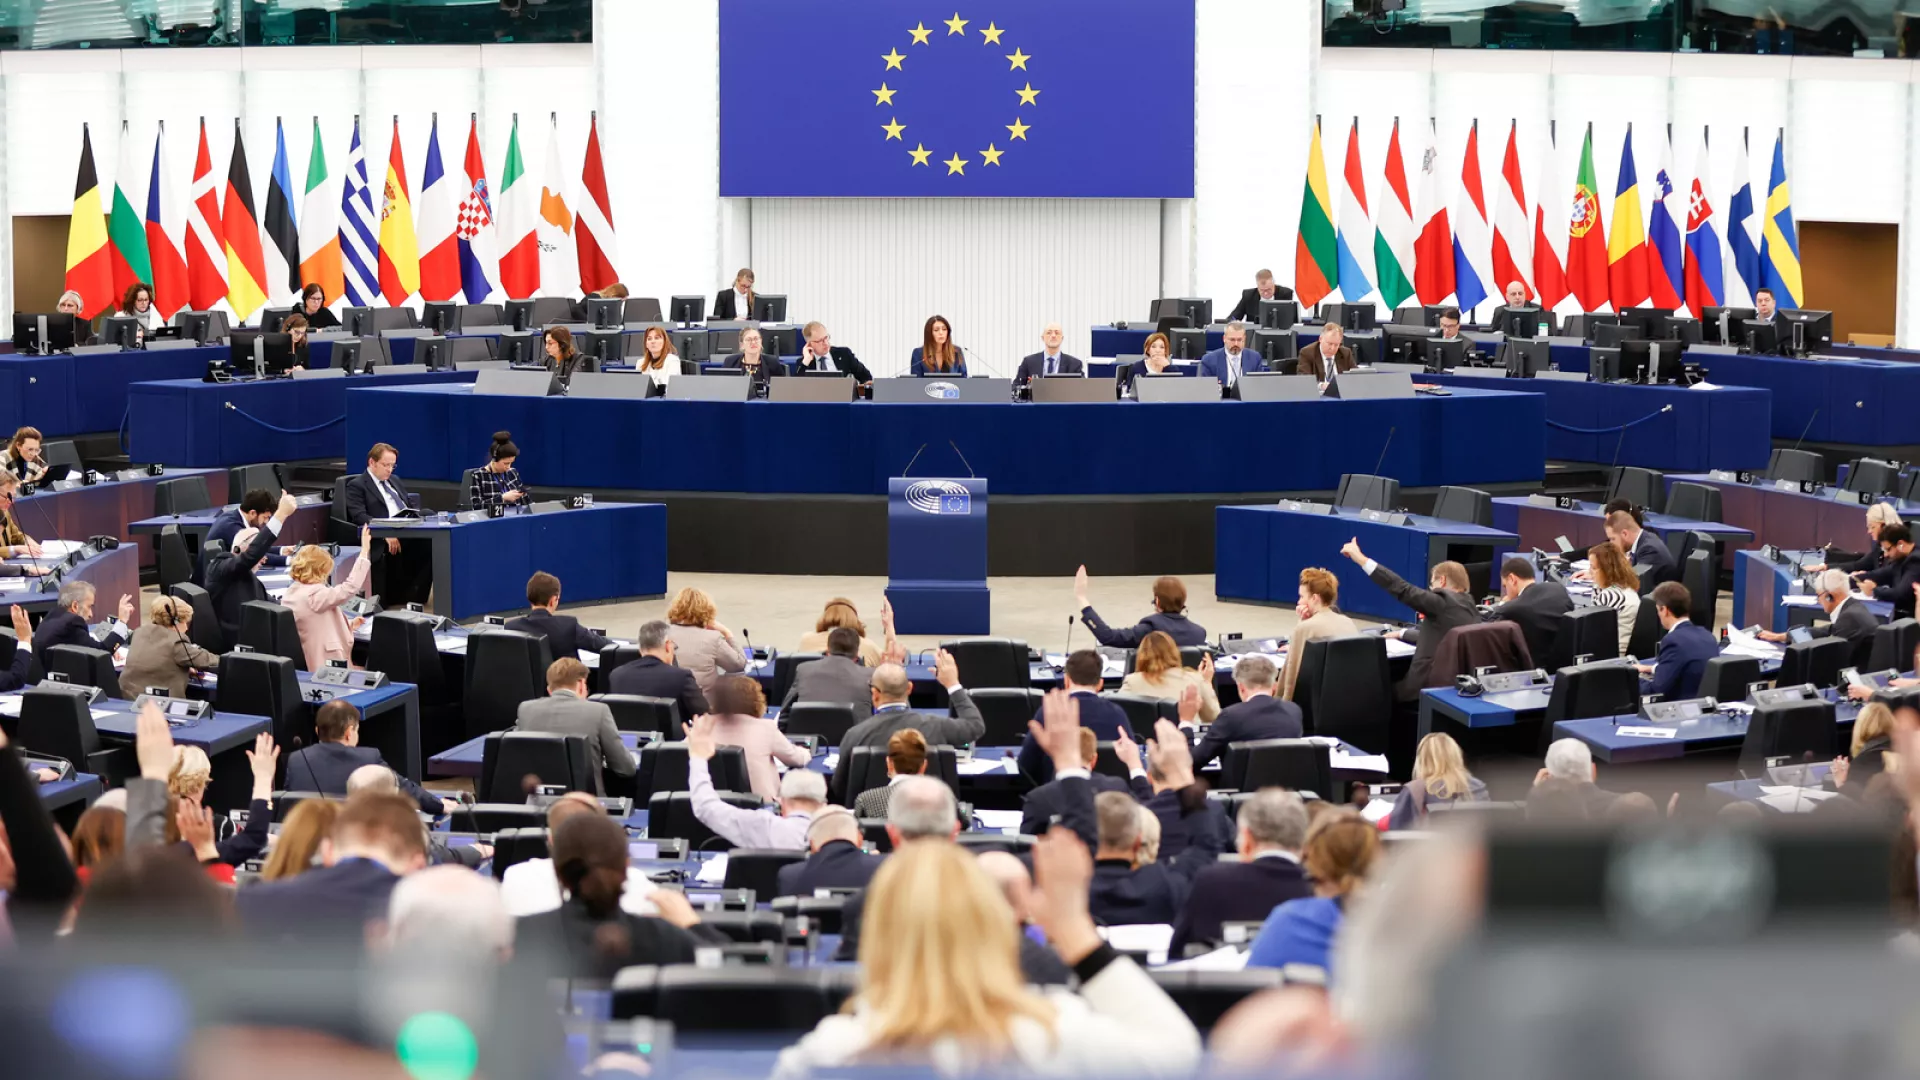 Populistët e krahut të djathtë mund të fitojnë kontrollin e Parlamentit të BE për herë të parë, thotë studimi